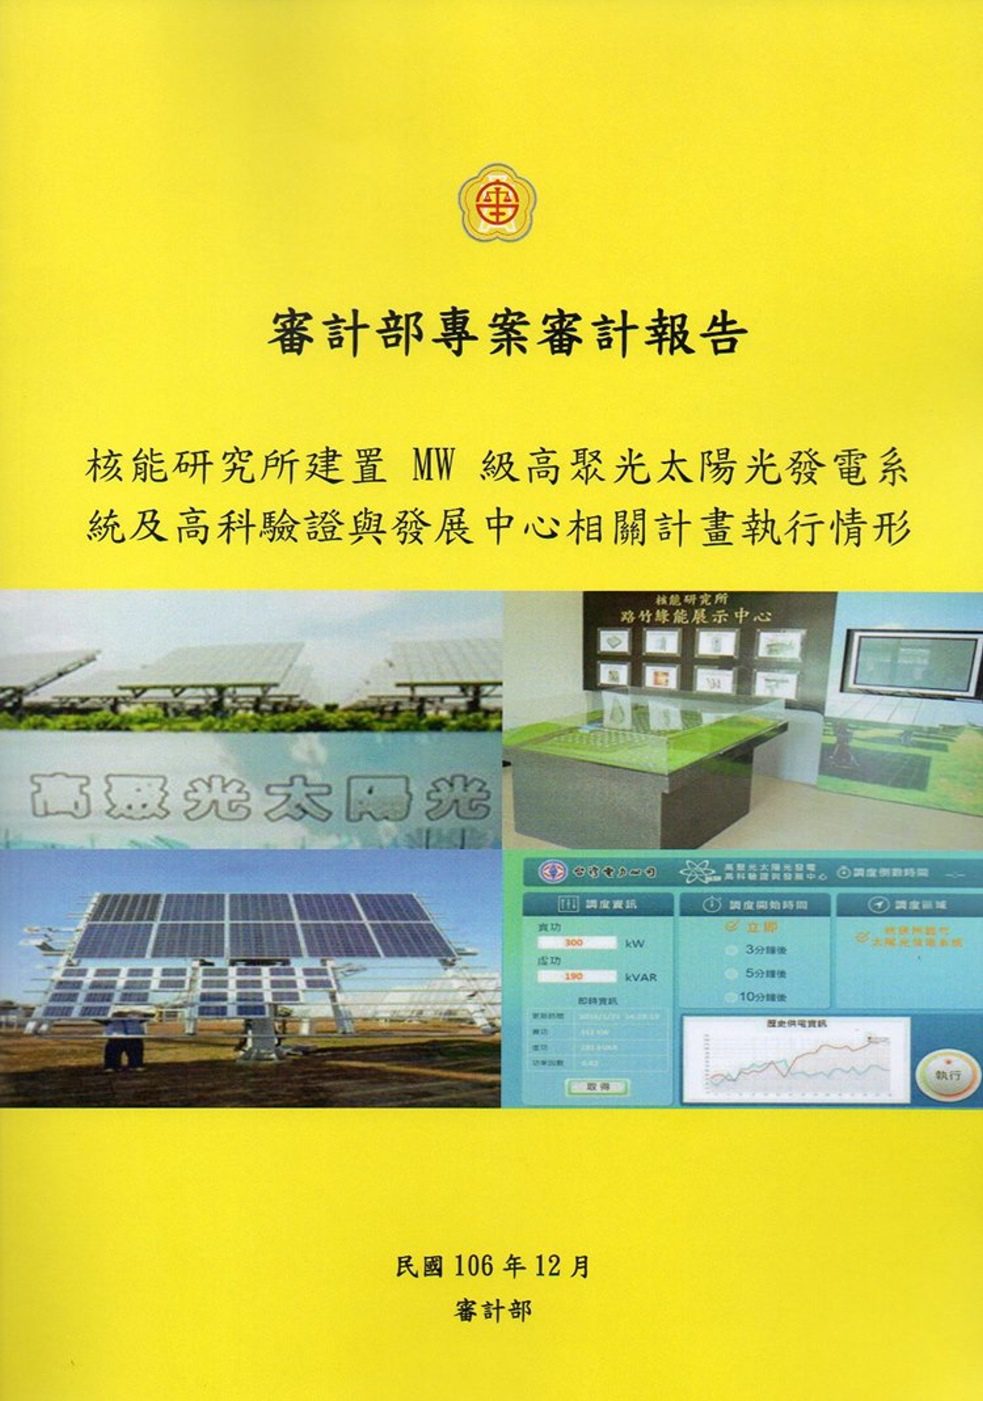 核能研究所建置MW級高聚光太陽光發電系統及高科驗證與發展中心相關計畫執行情形